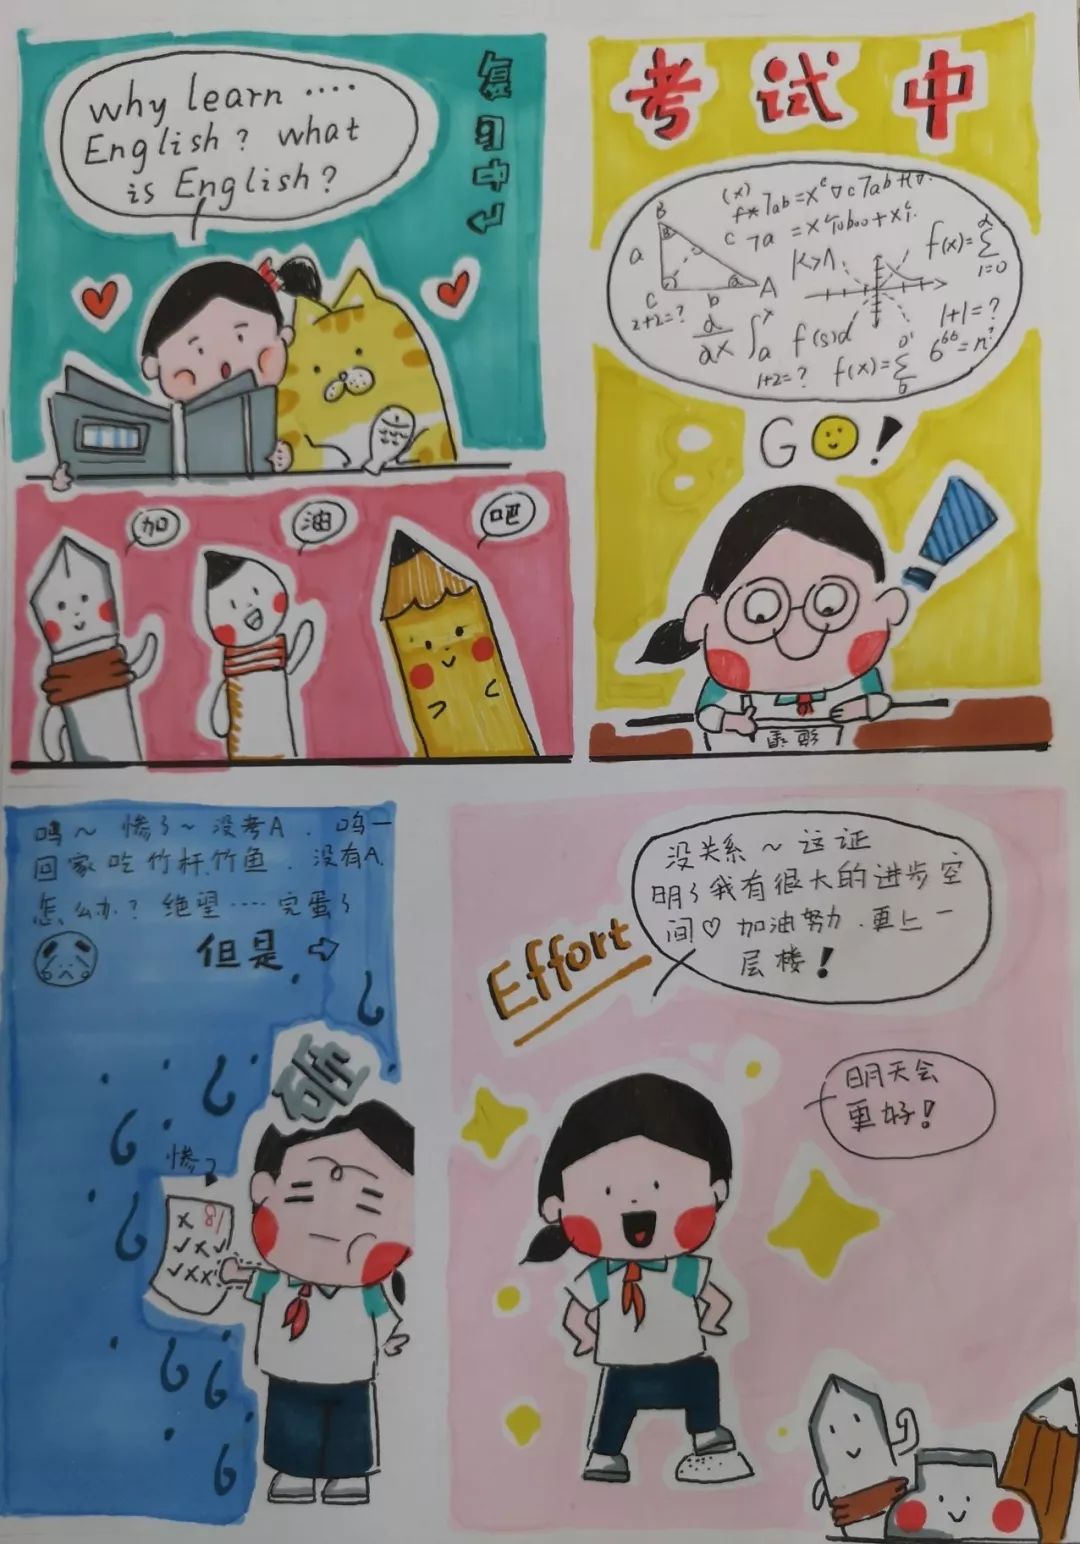 《美好》经过精心挑选,报送参与晋江市中小学校园心理漫画评选大赛